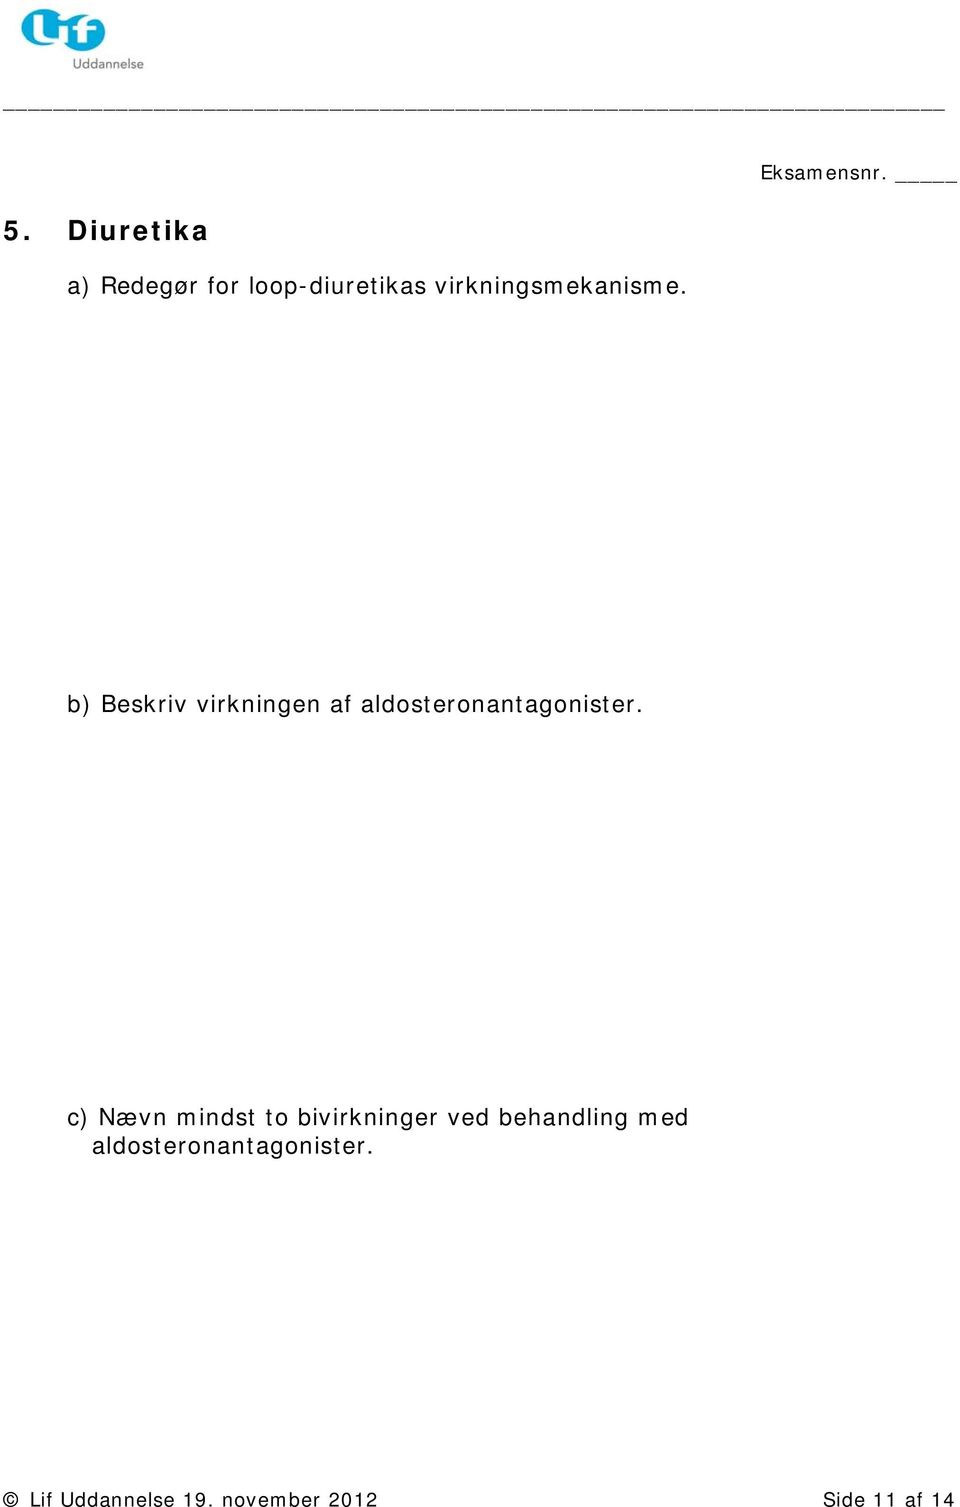 b) Beskriv virkningen af aldosteronantagonister.